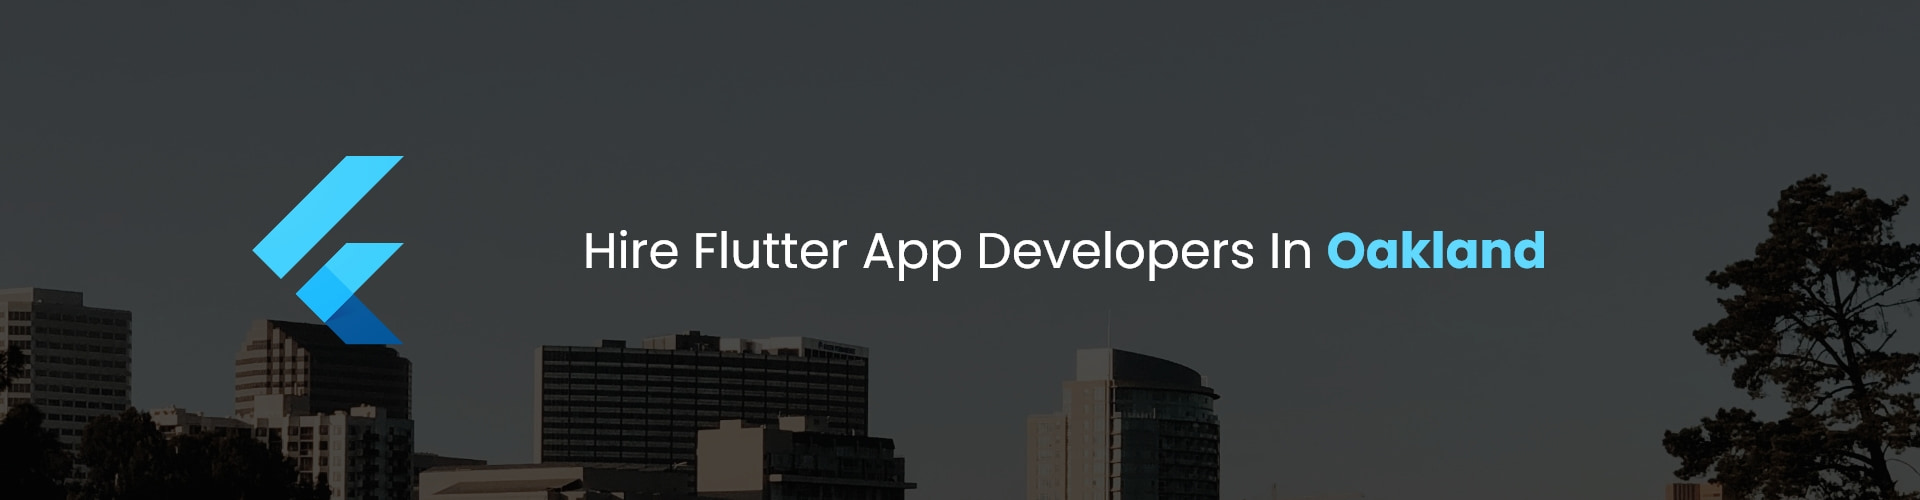 hire flutter app developers in oakland